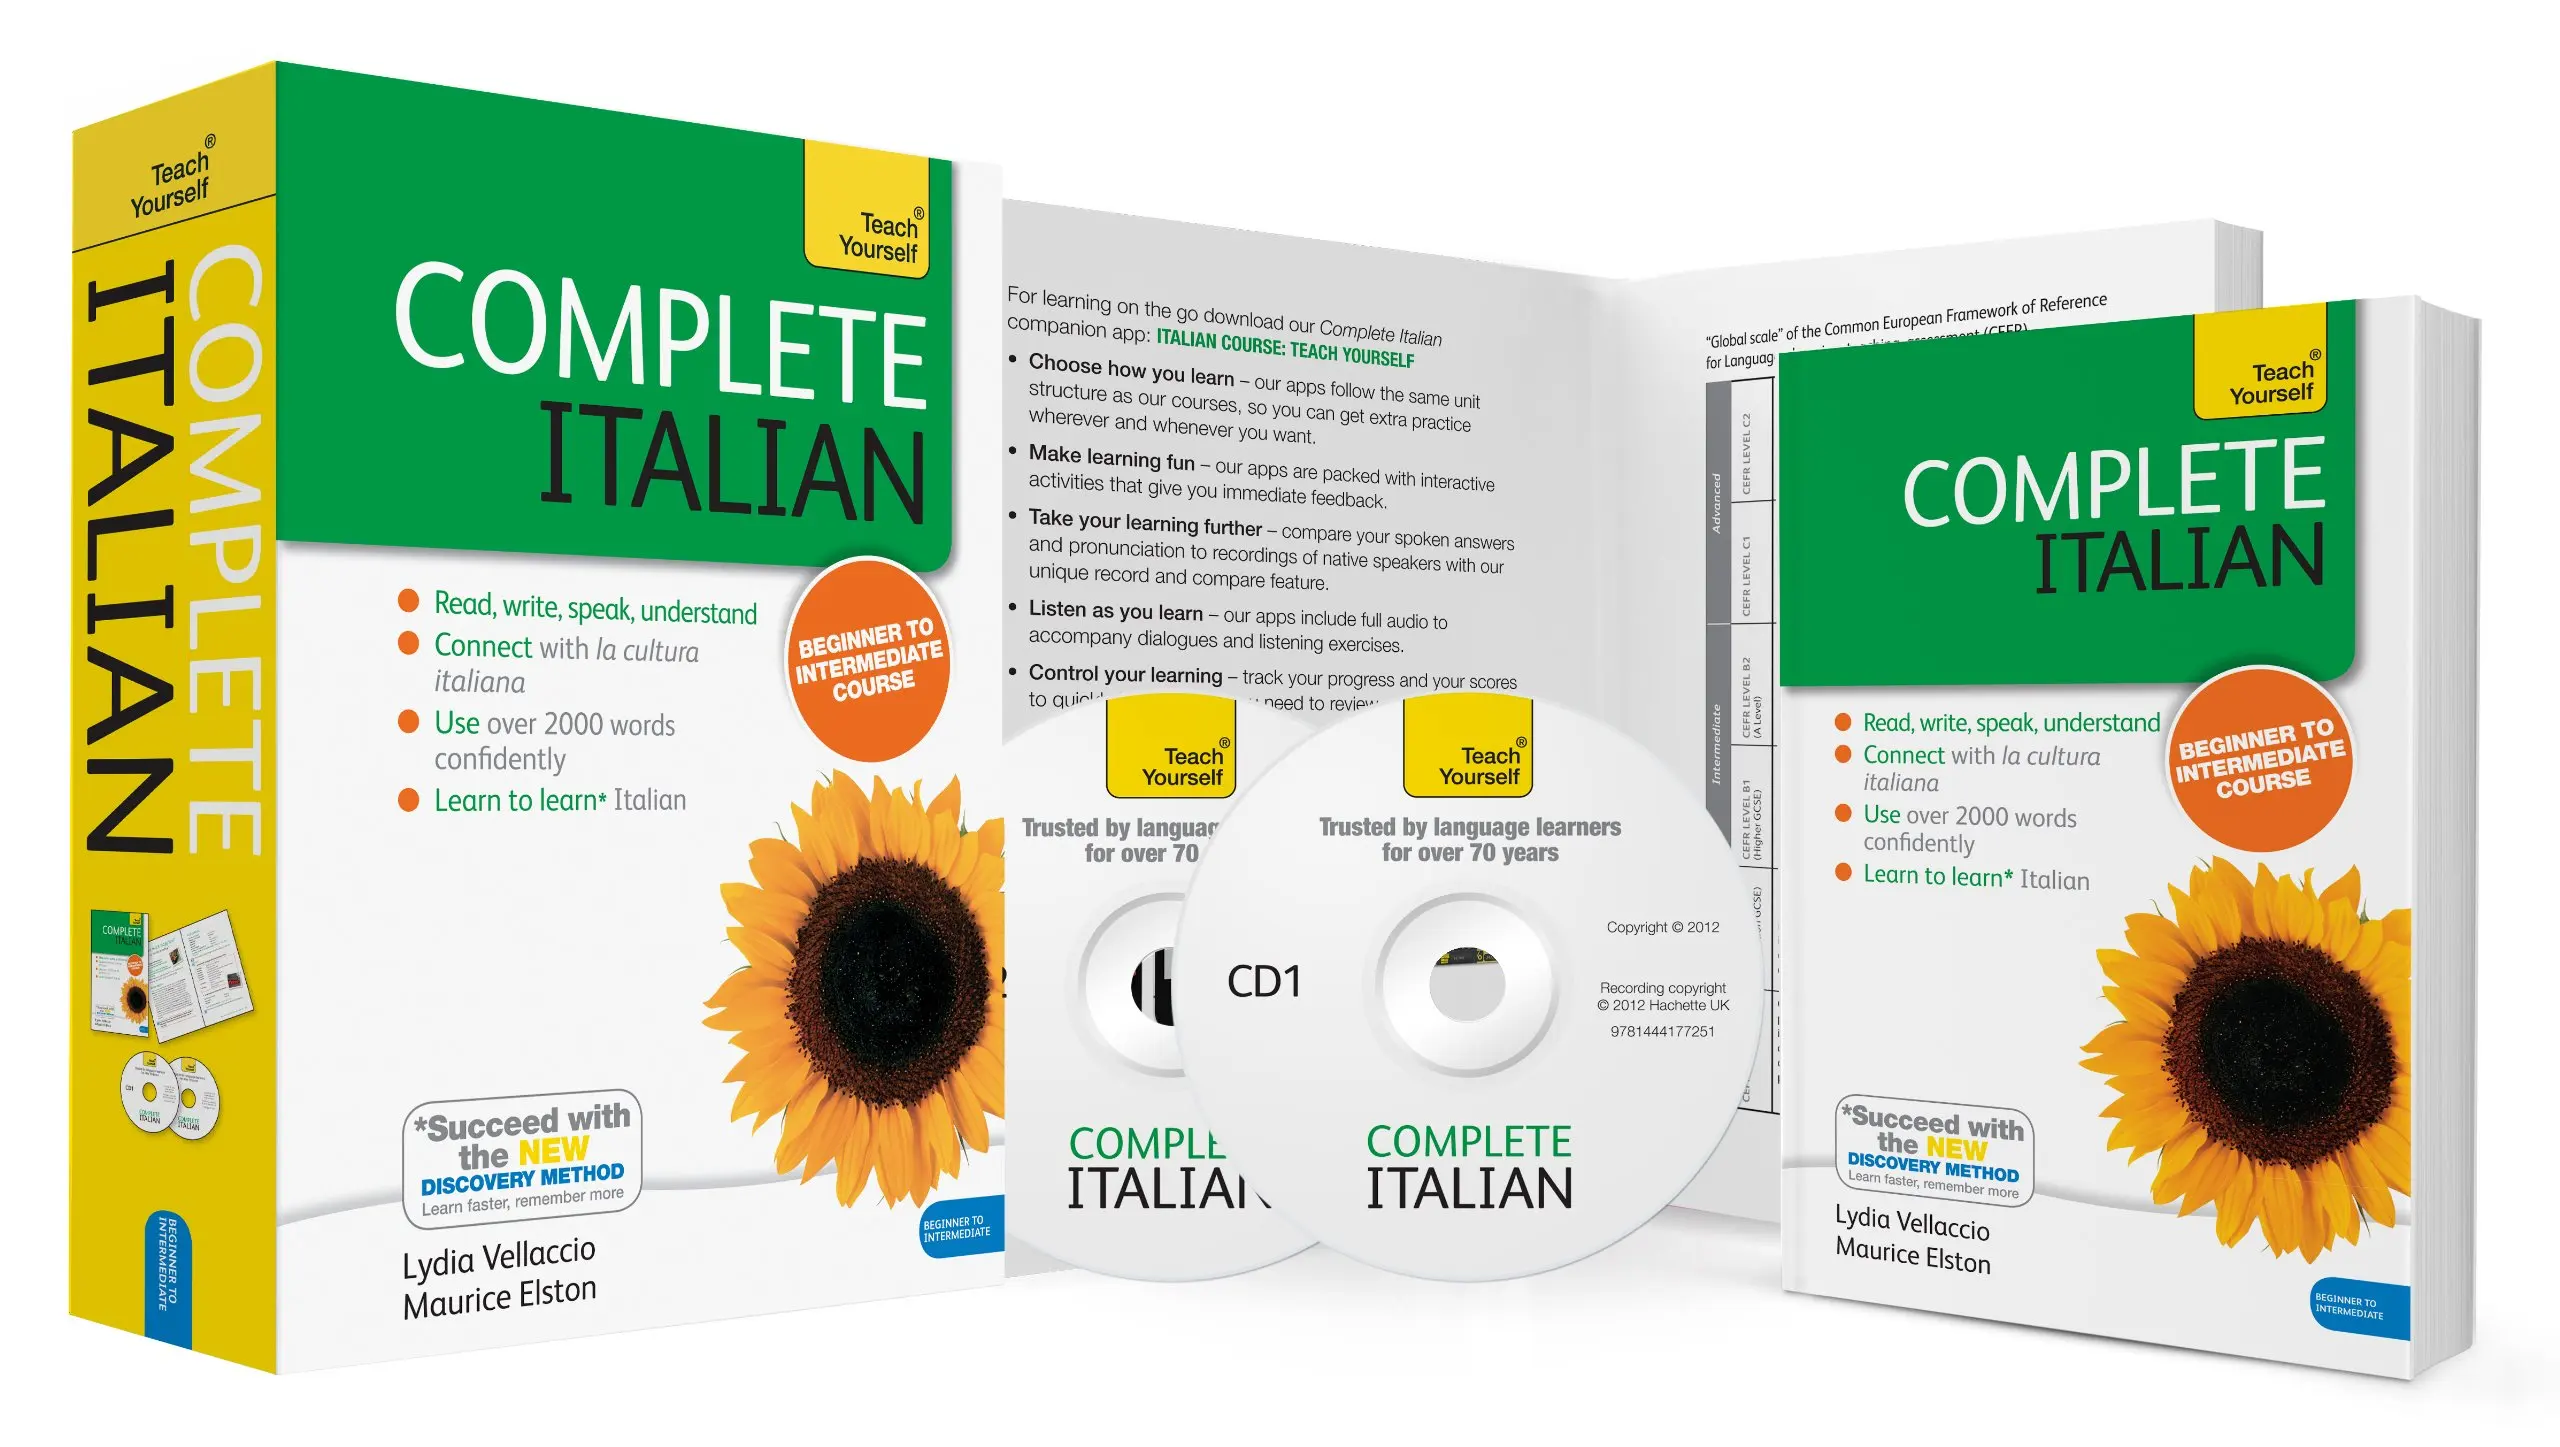 

Научите себя полному итальянскому (Book/CD Pack) (Научите себя языку) учиться читать, писать, говорить и понимать новый язык